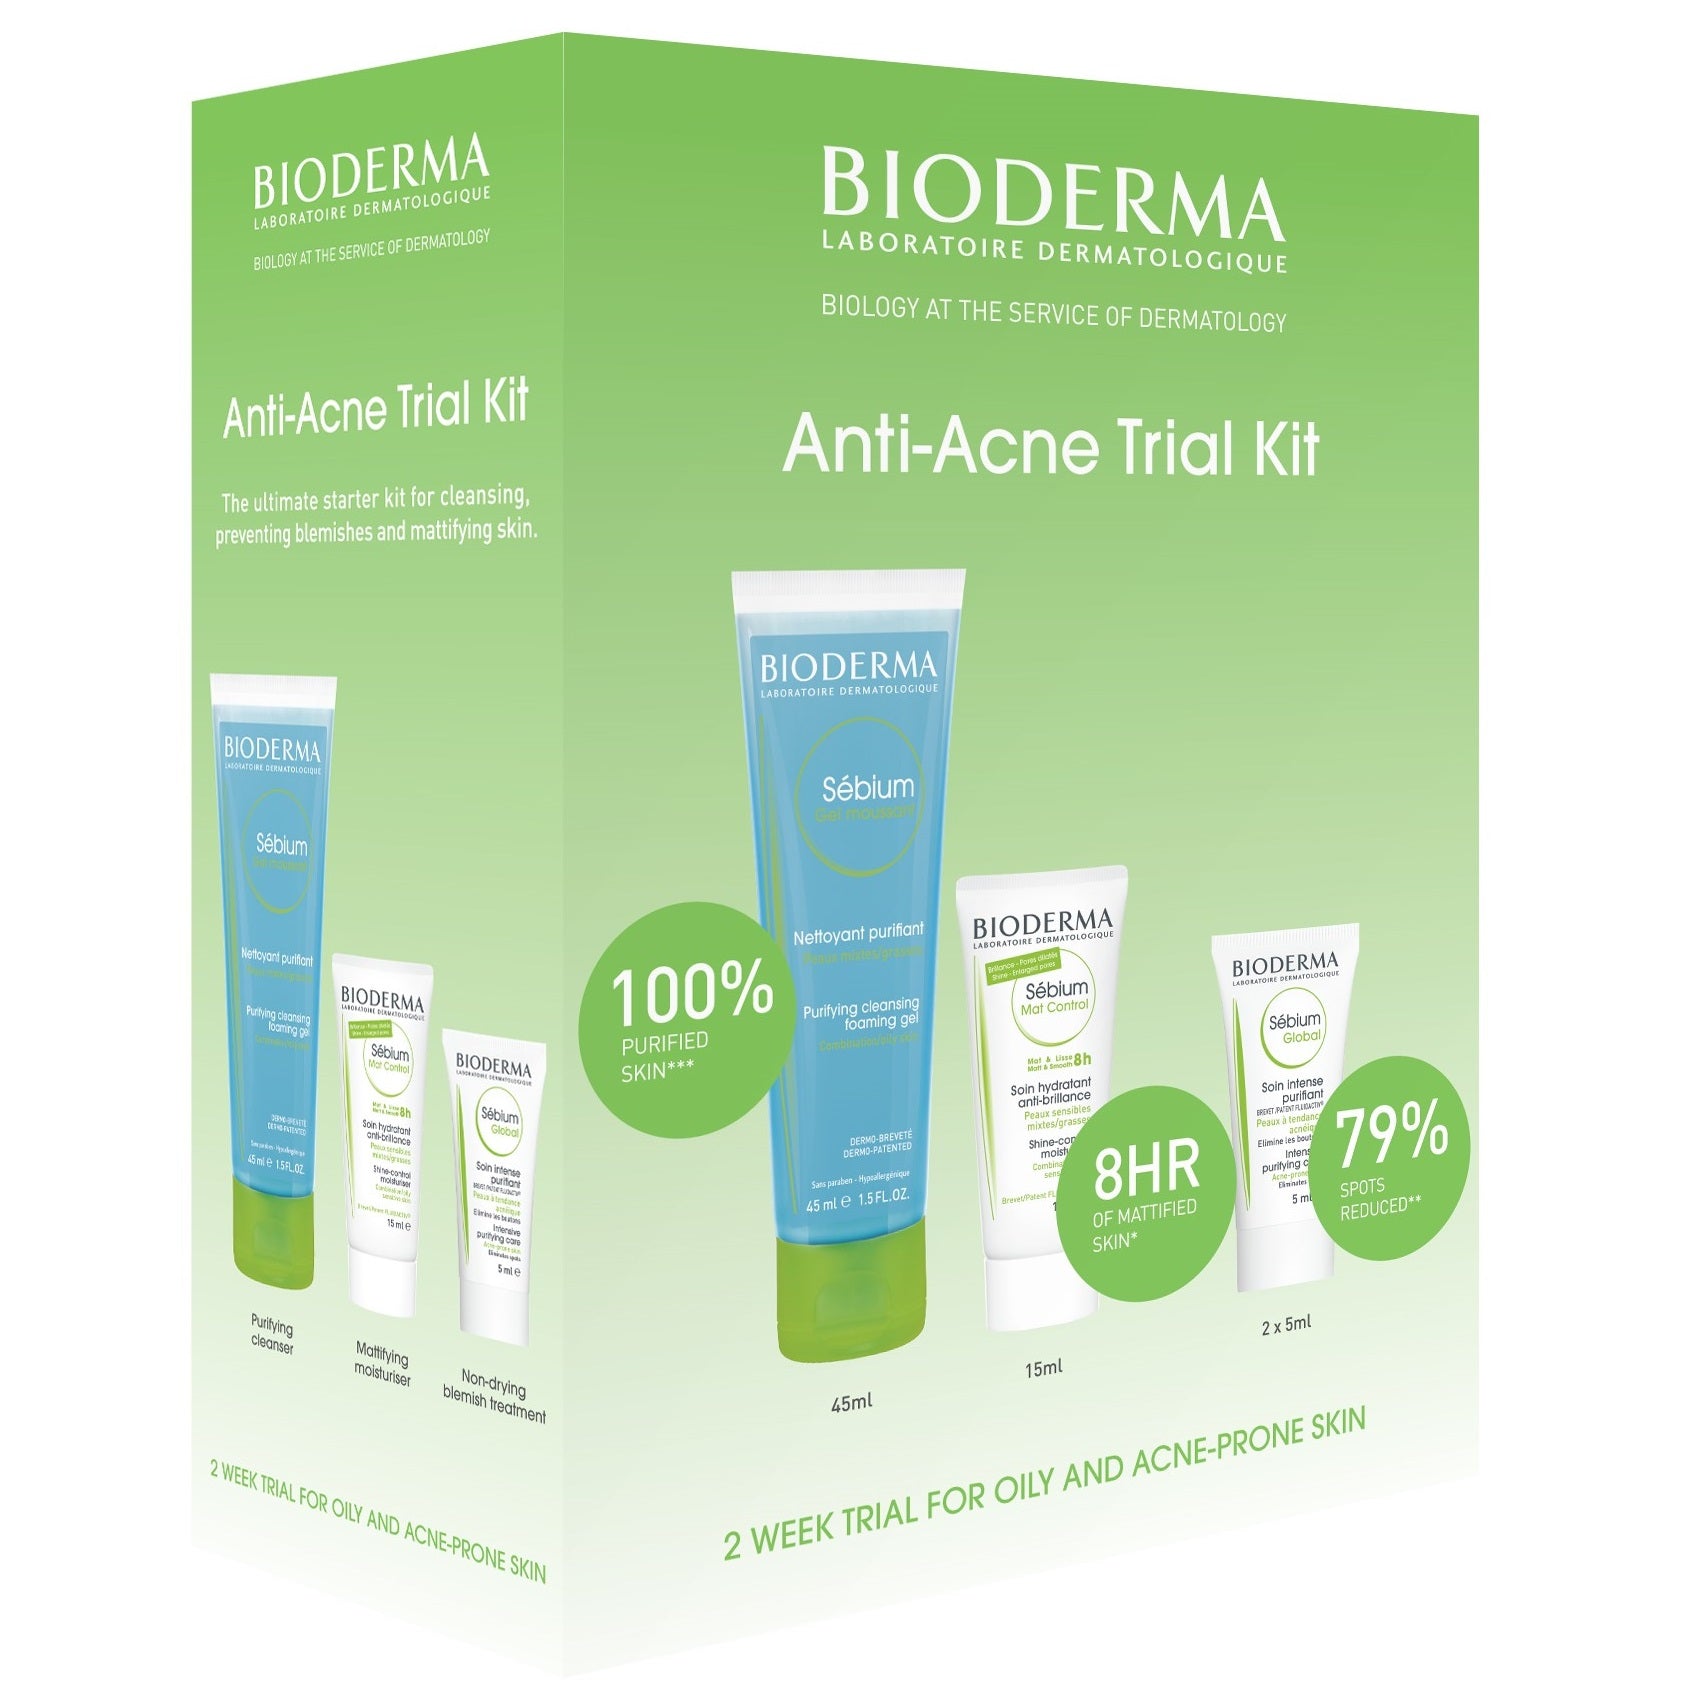 BIODERMA Sebium Anti-Acne Trial Kit